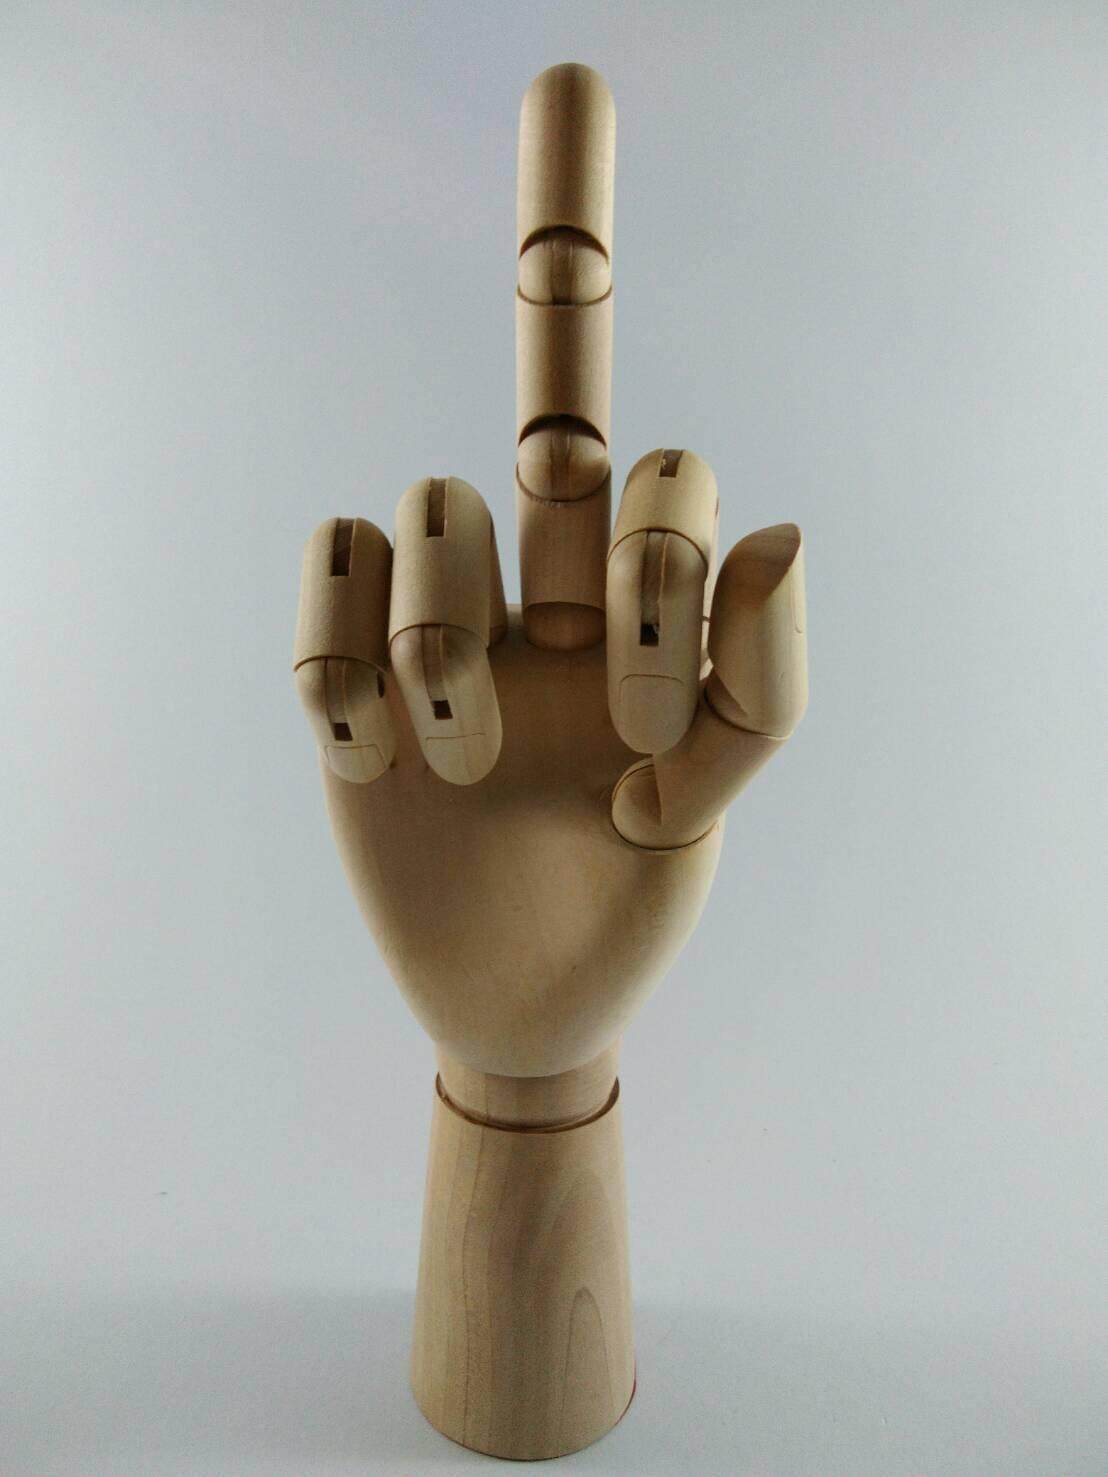 หุ่นมือไม้ หุ่นมือไม้จำลอง หุ่นไม้ฝึกวาดรูป ขนาดเท่ามือจริง